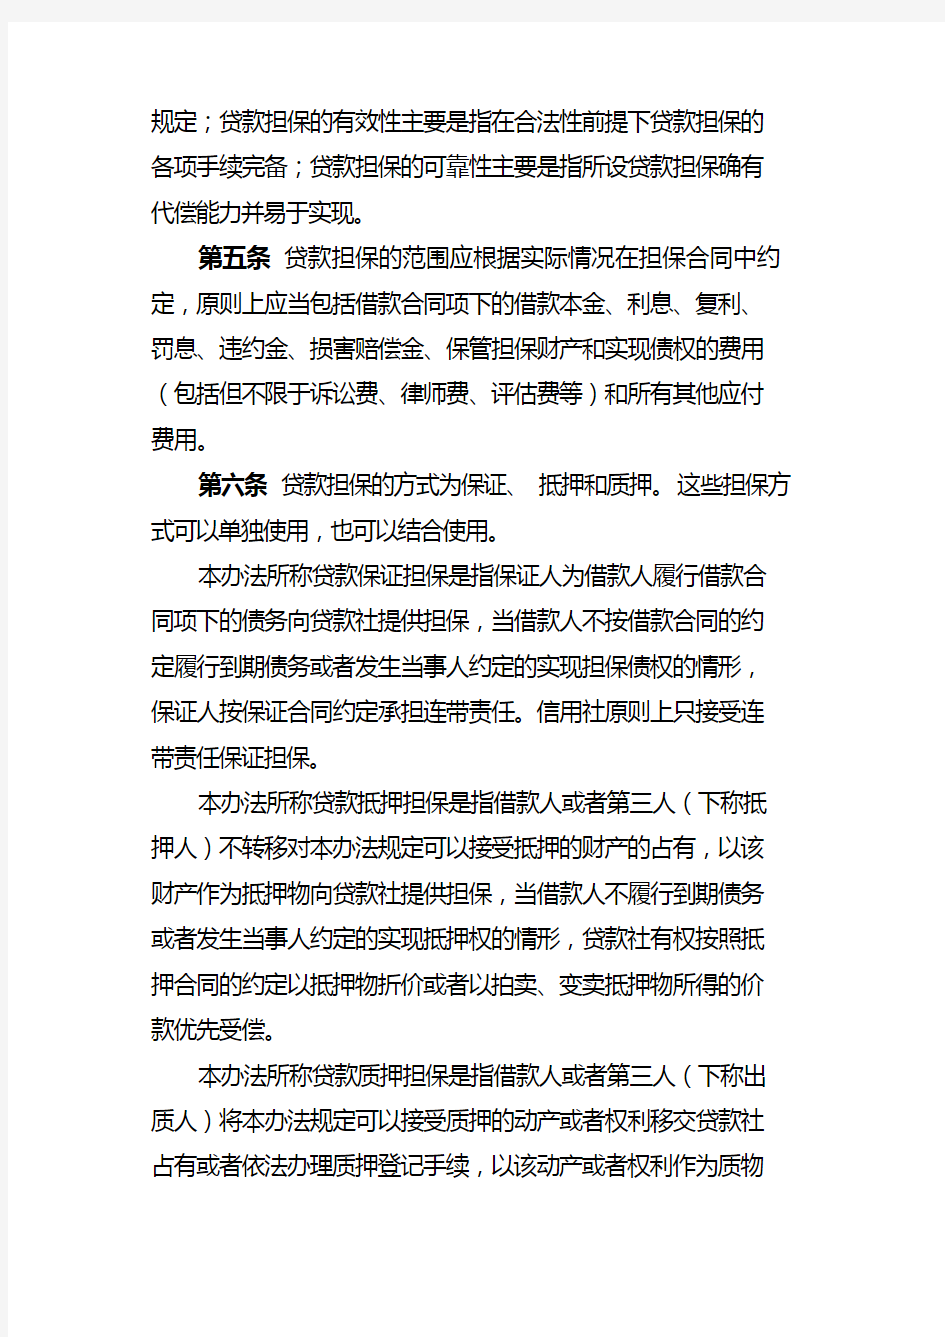 黑龙江省农村信用社贷款担保管理办法